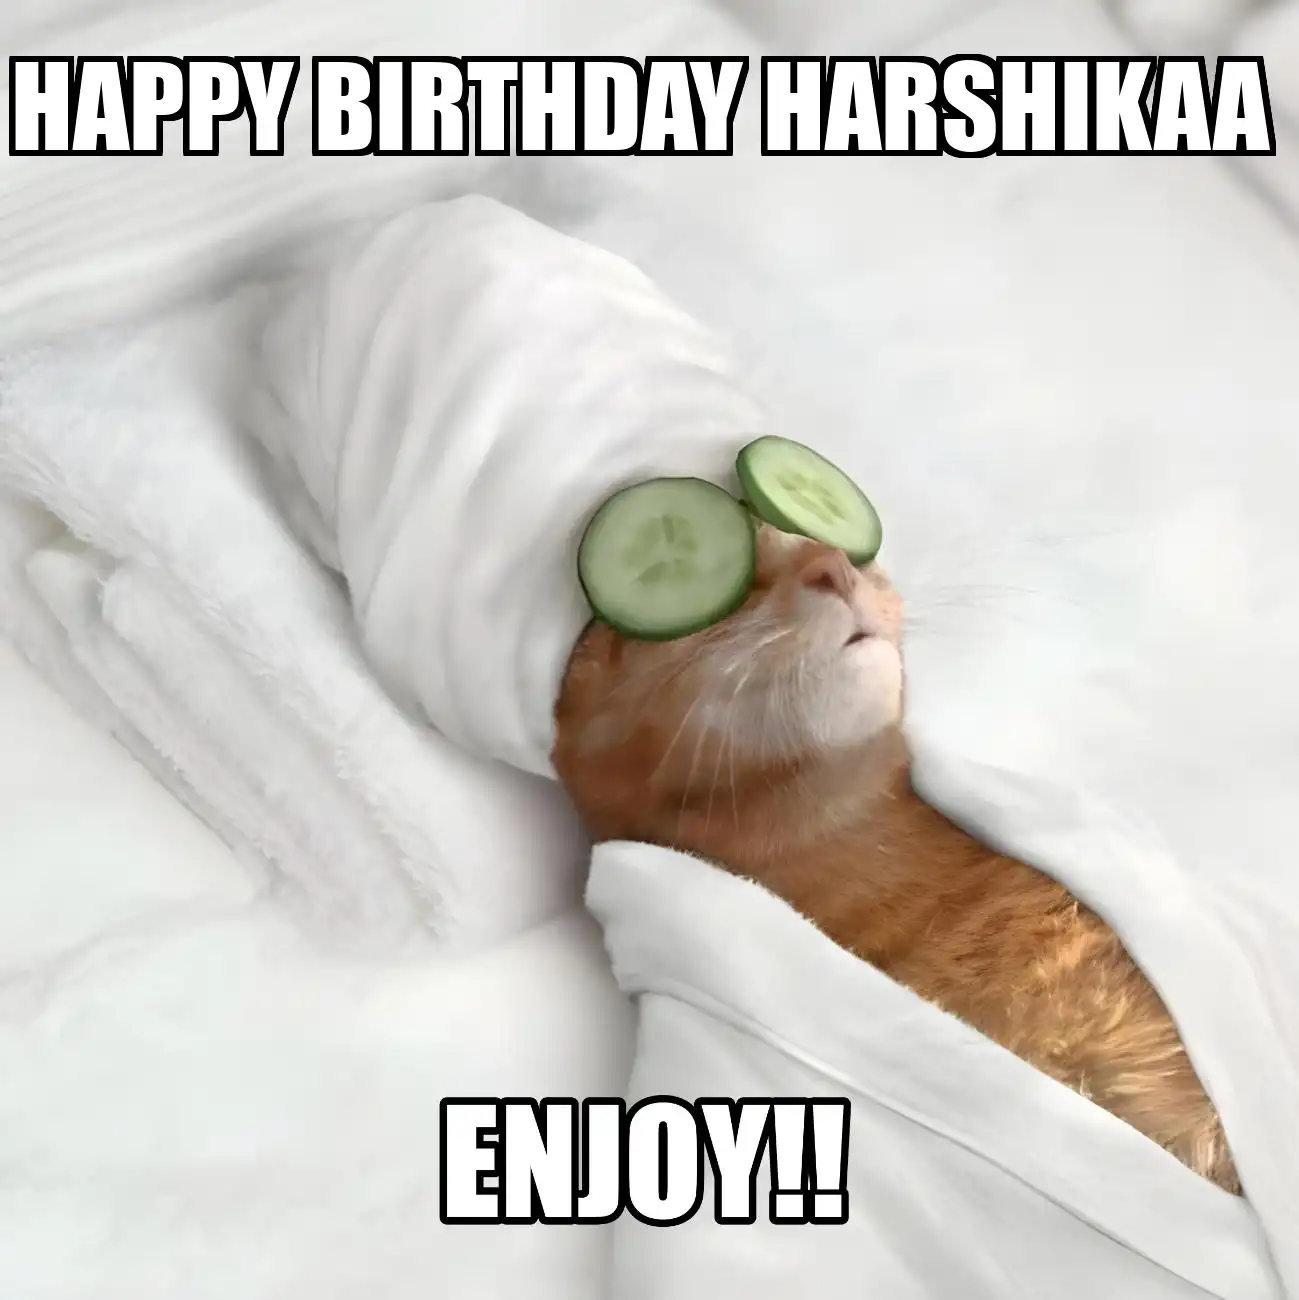 Happy Birthday Harshikaa Enjoy Cat Meme